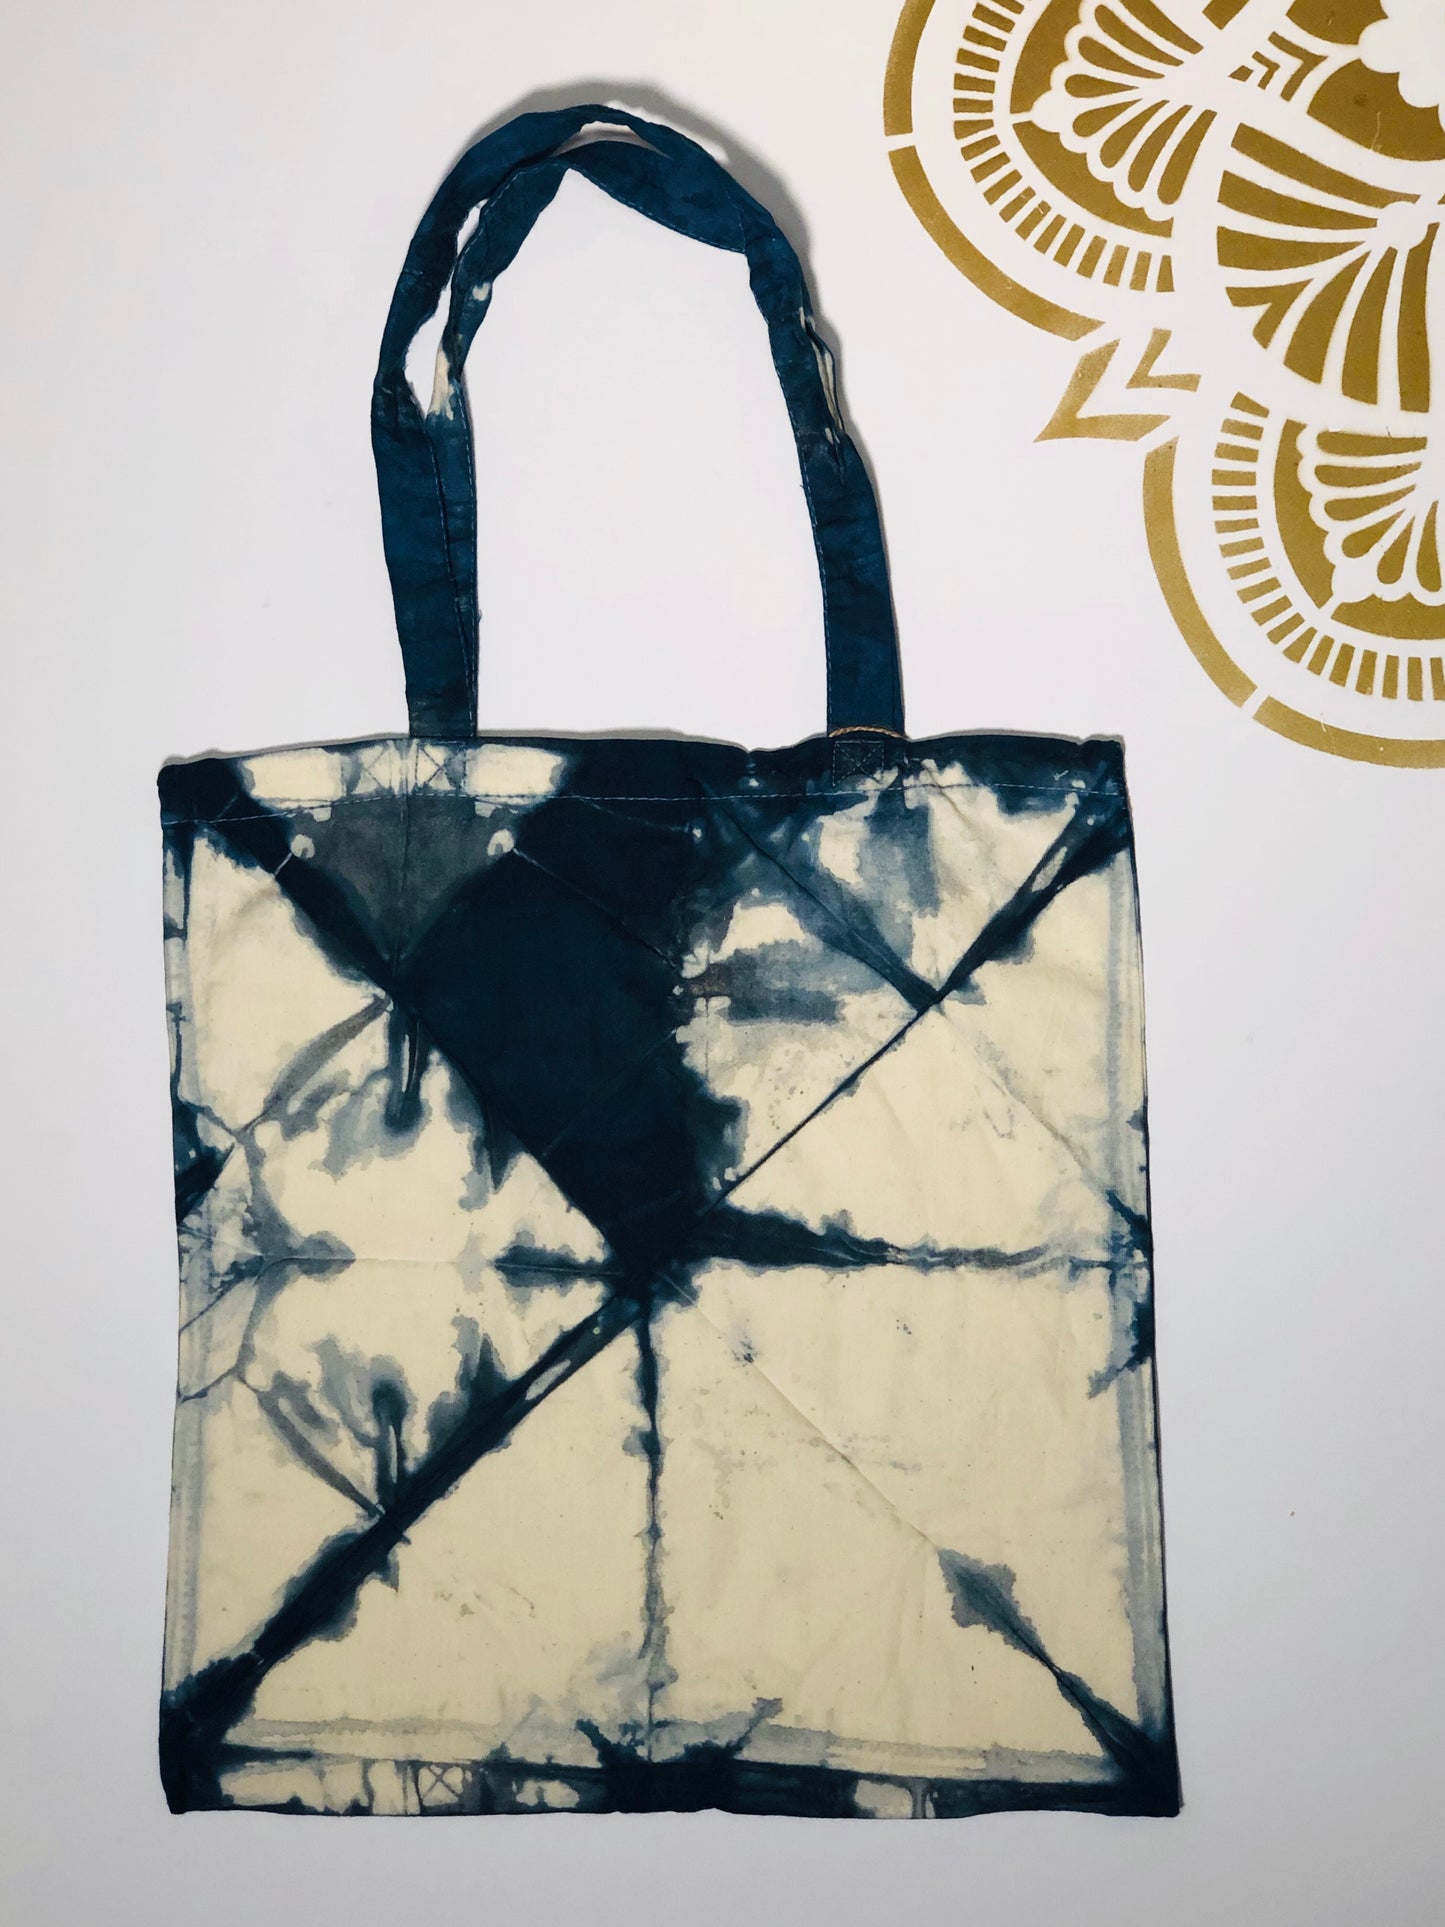 Shibori Tote Bag #5 - Ola Wyola